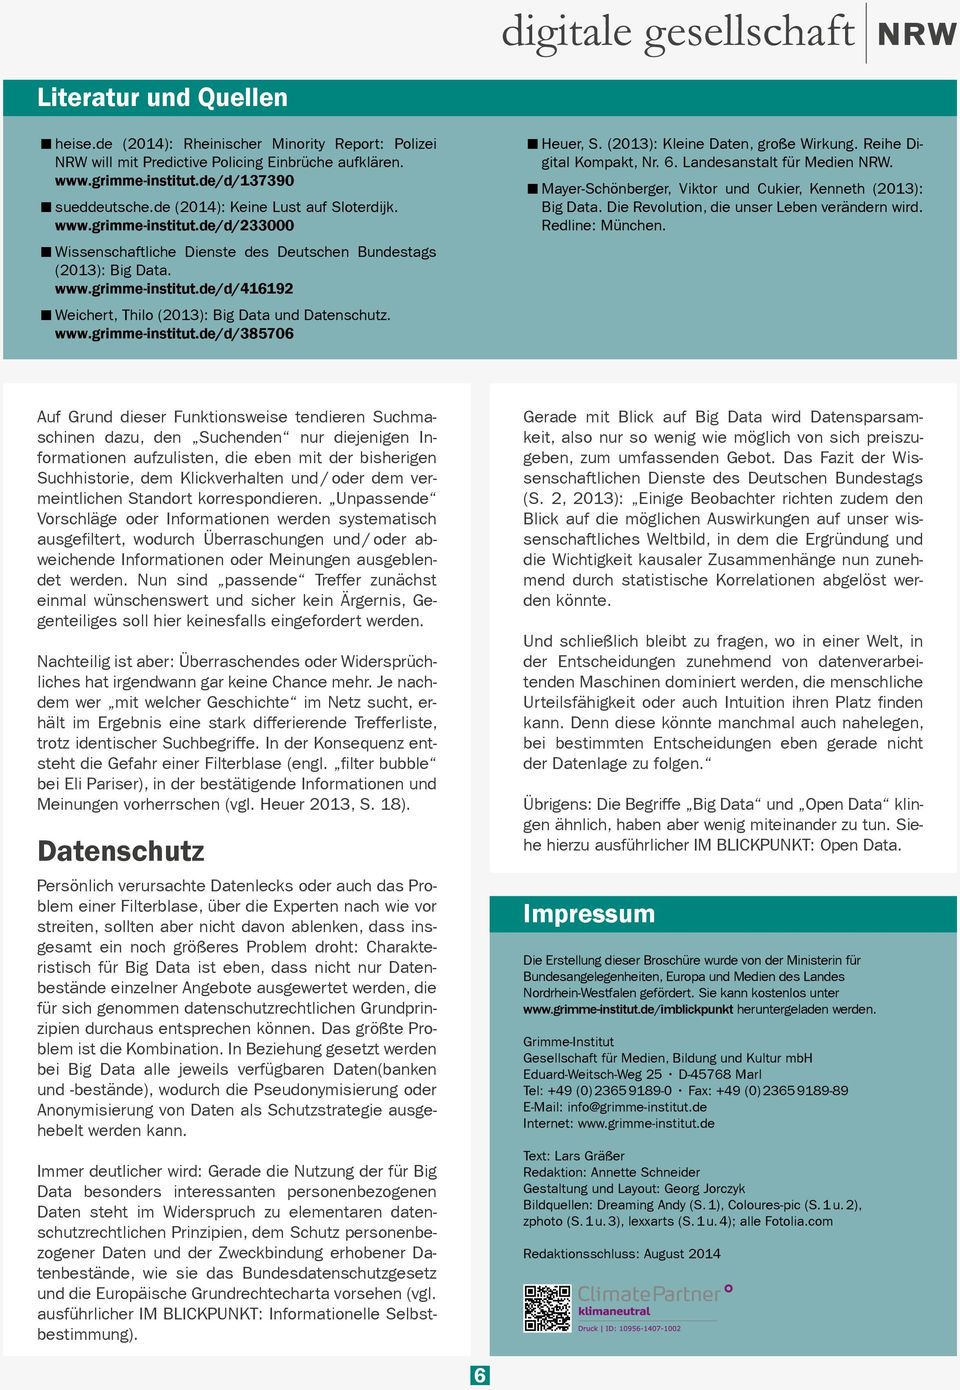 www.grimme-institut.de/d/385706 Heuer, S. (2013): Kleine Daten, große Wirkung. Reihe Digital Kompakt, Nr. 6. Landesanstalt für Medien NRW.